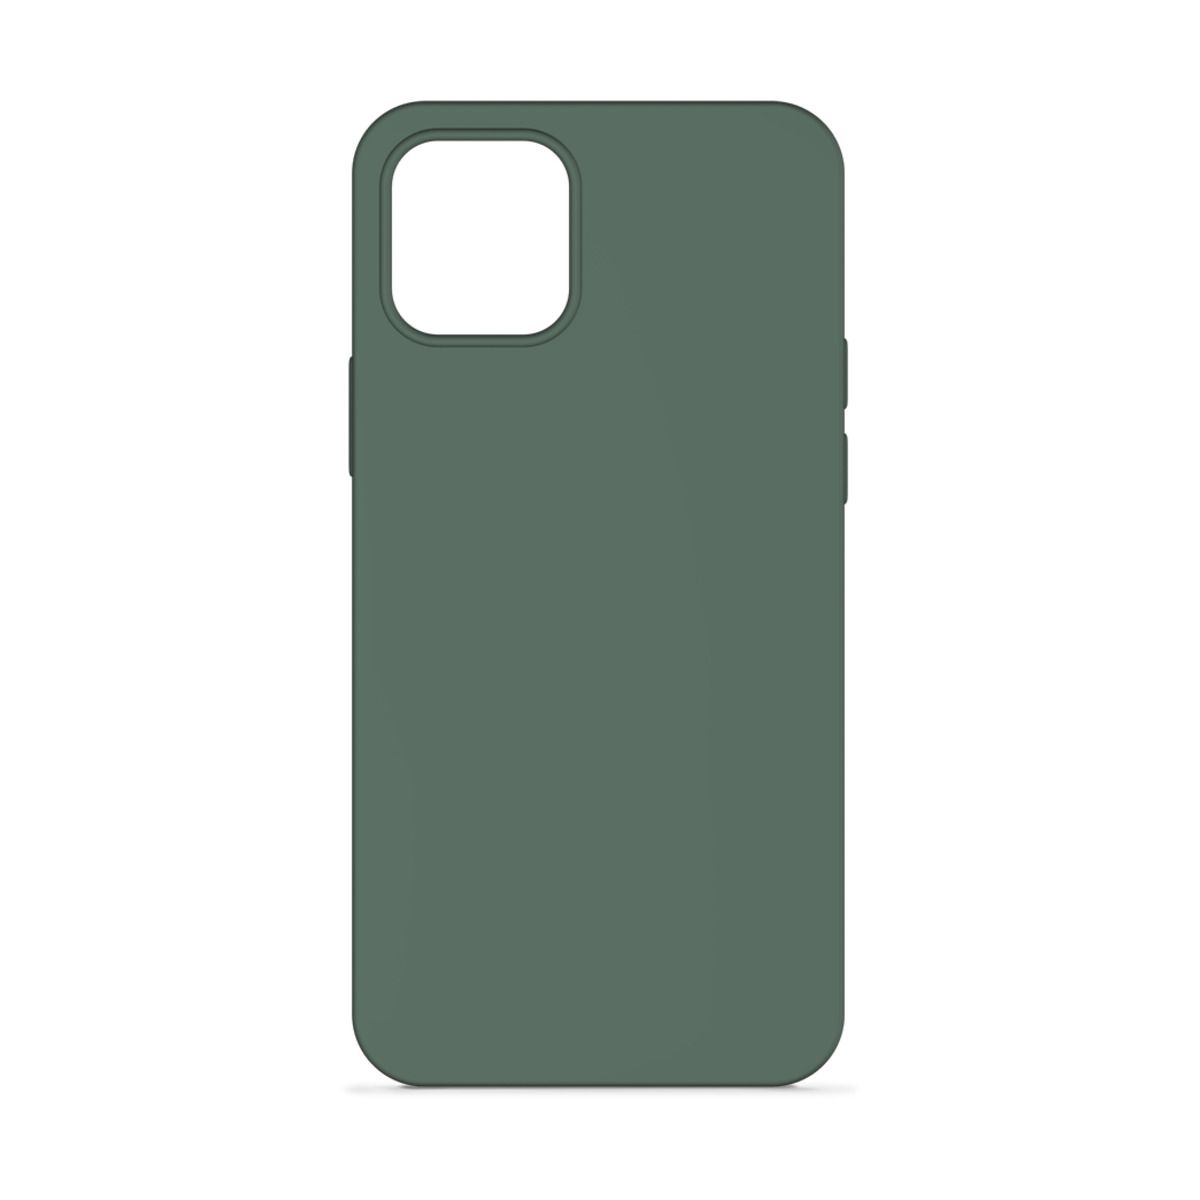 Epico Silicone Case for iPhone 12 mini - dark green